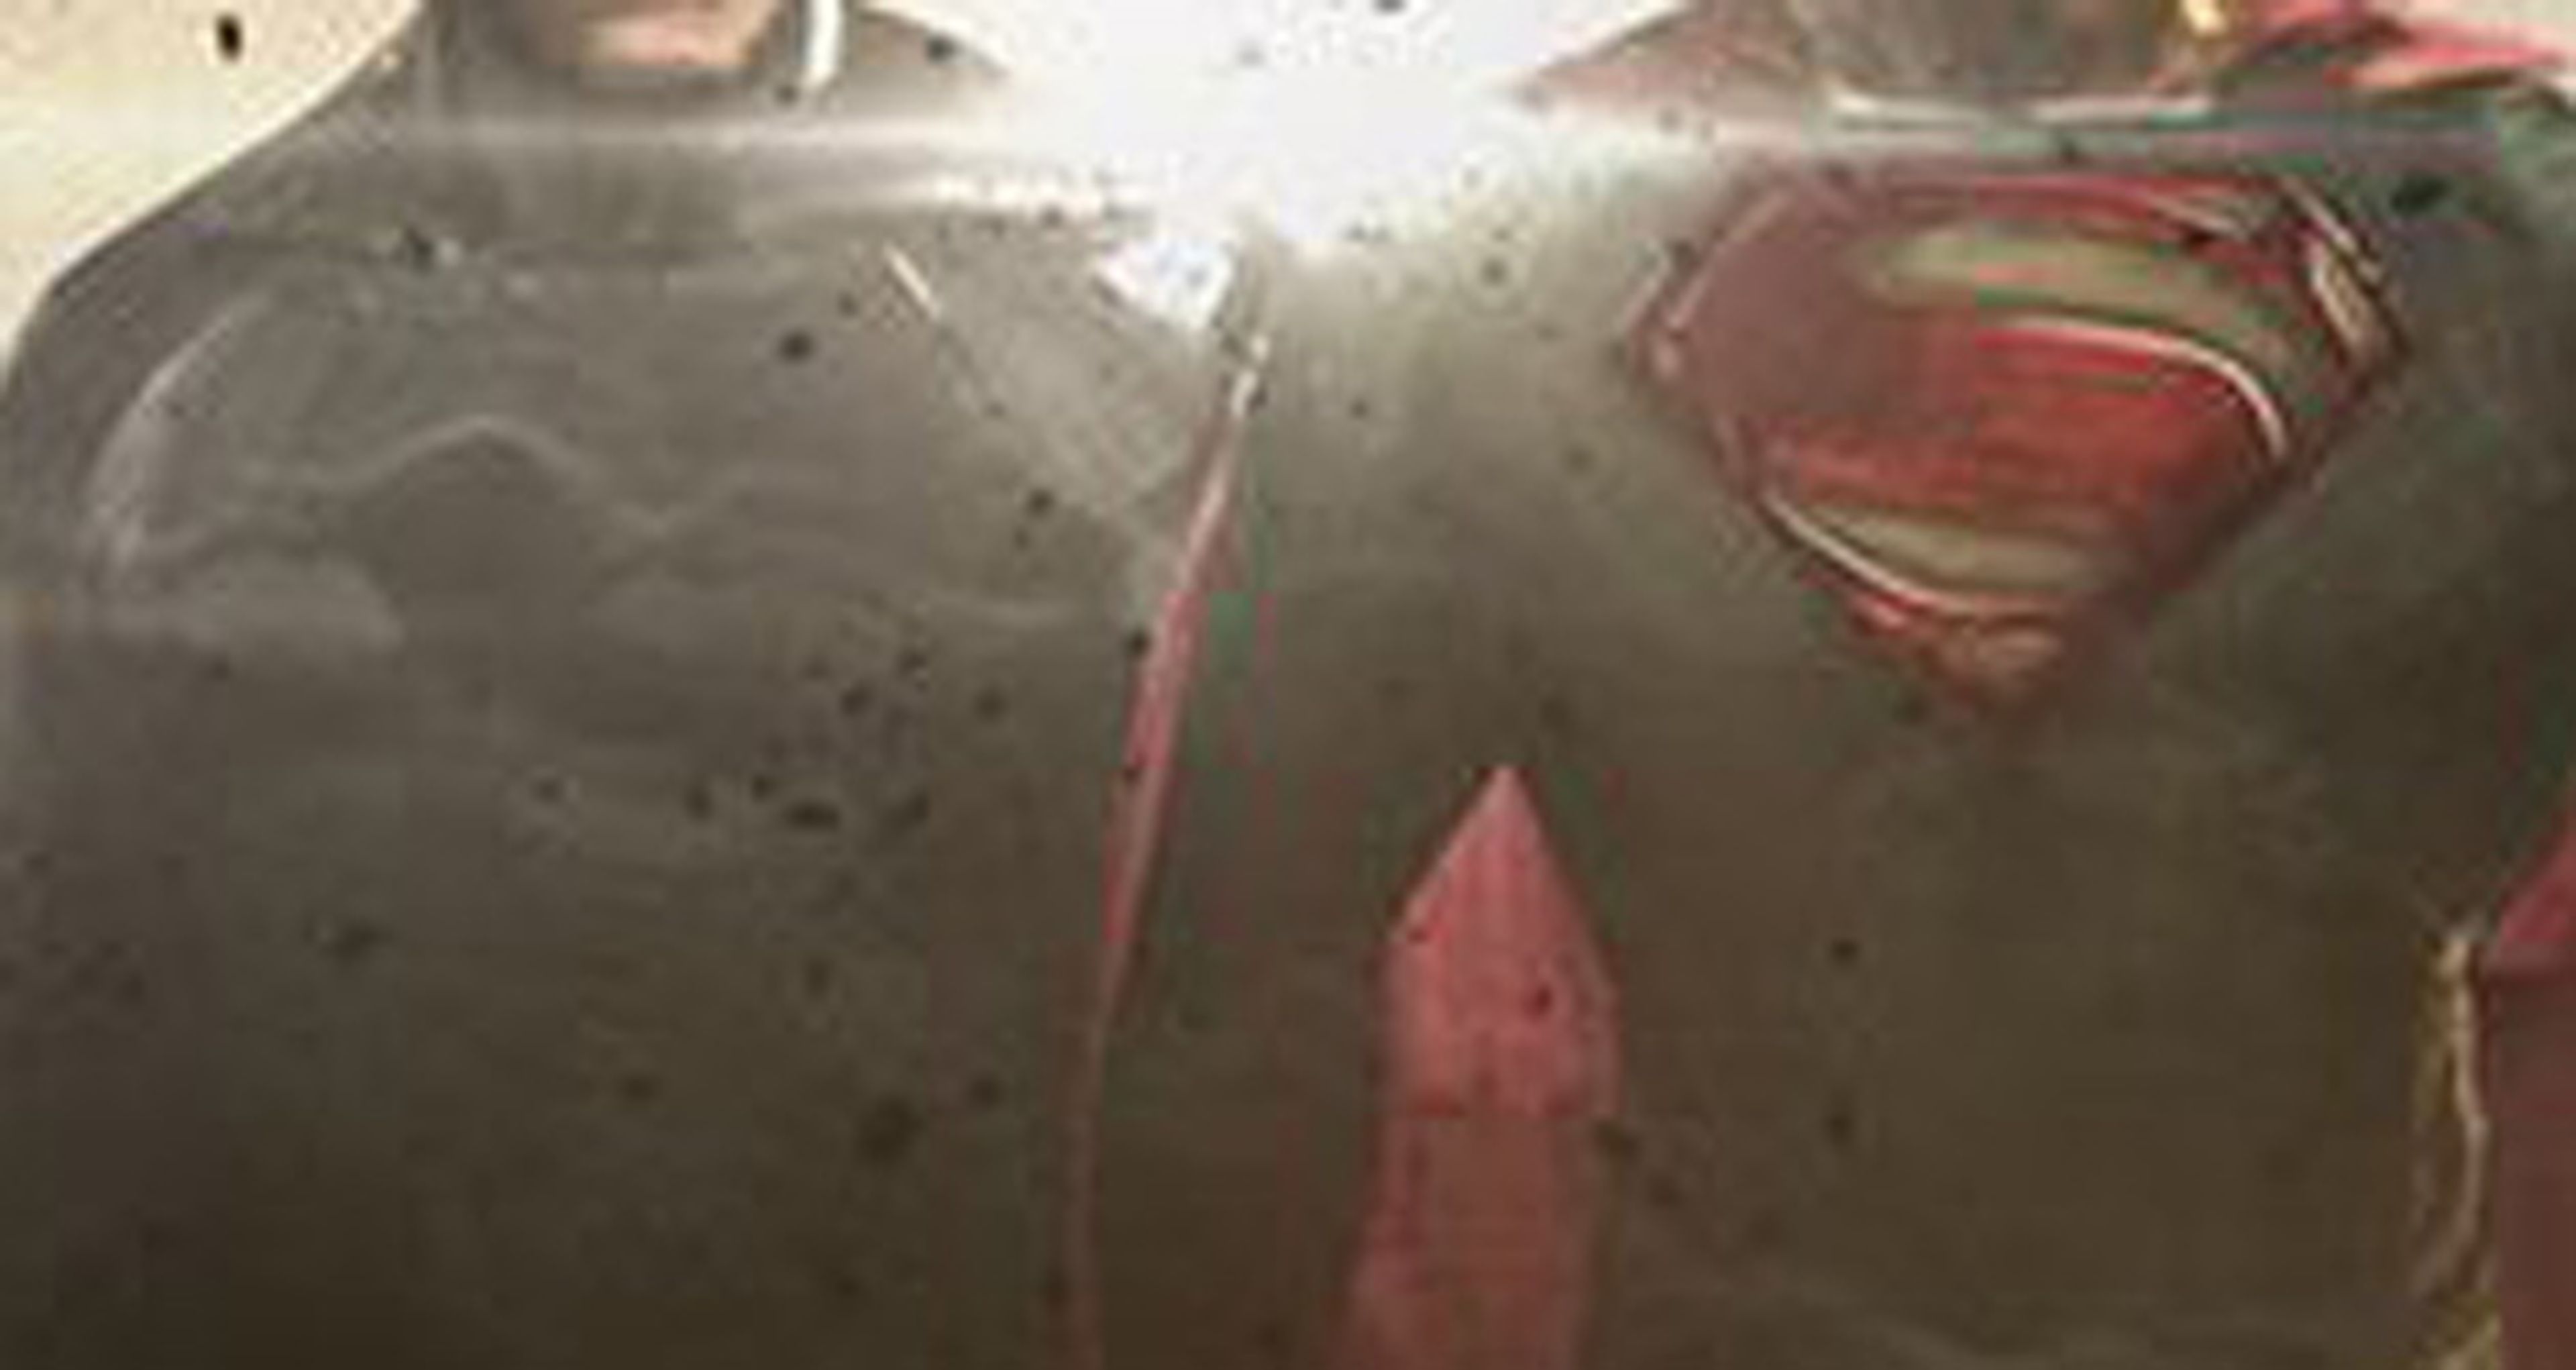 Batman v Superman revela la imagen oficial de La Liga de la Justicia